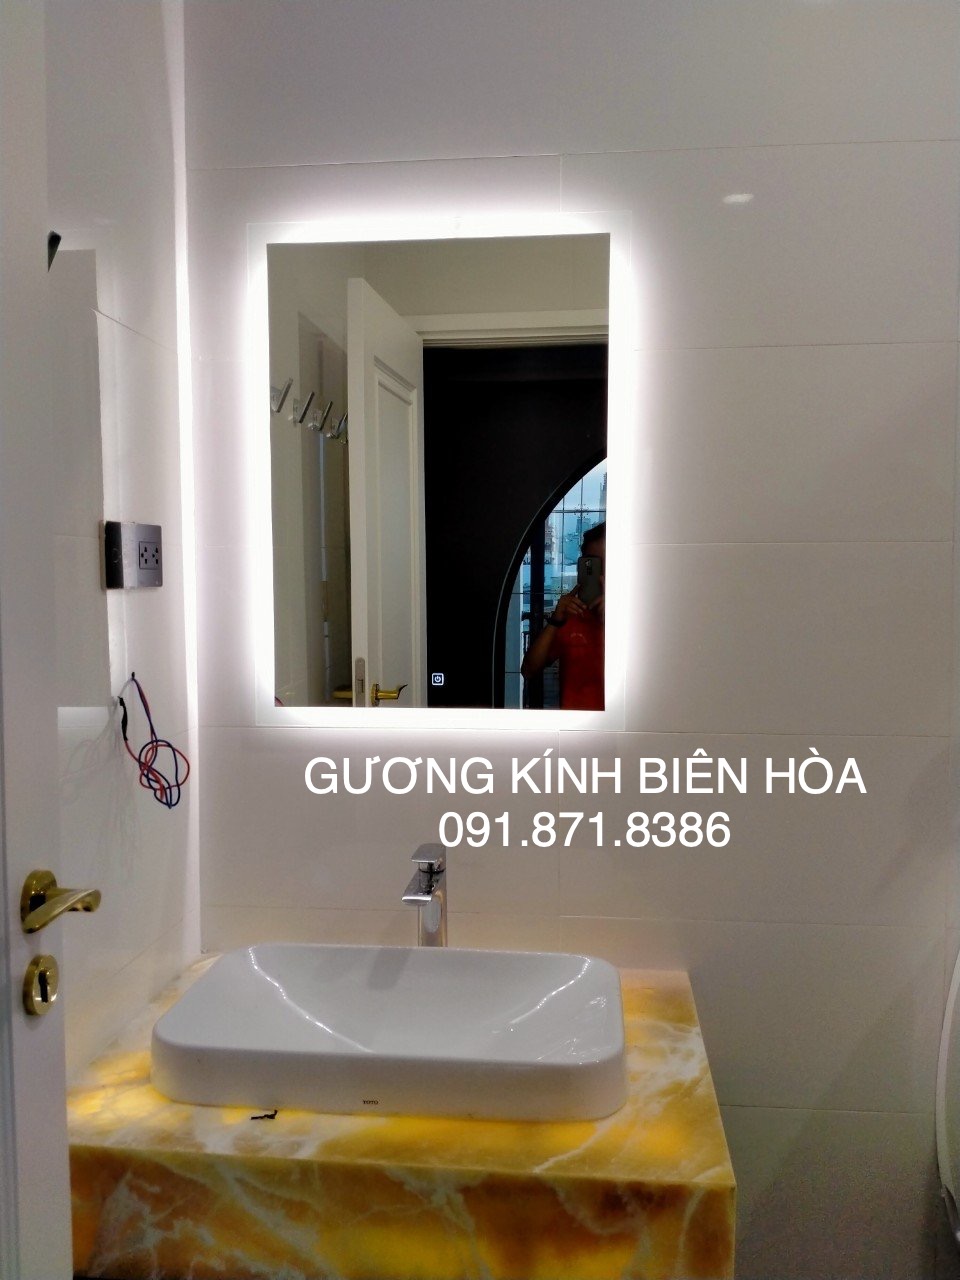 Gương nhà vệ sinh cao cấp đèn led Biên Hòa Đồng Nai